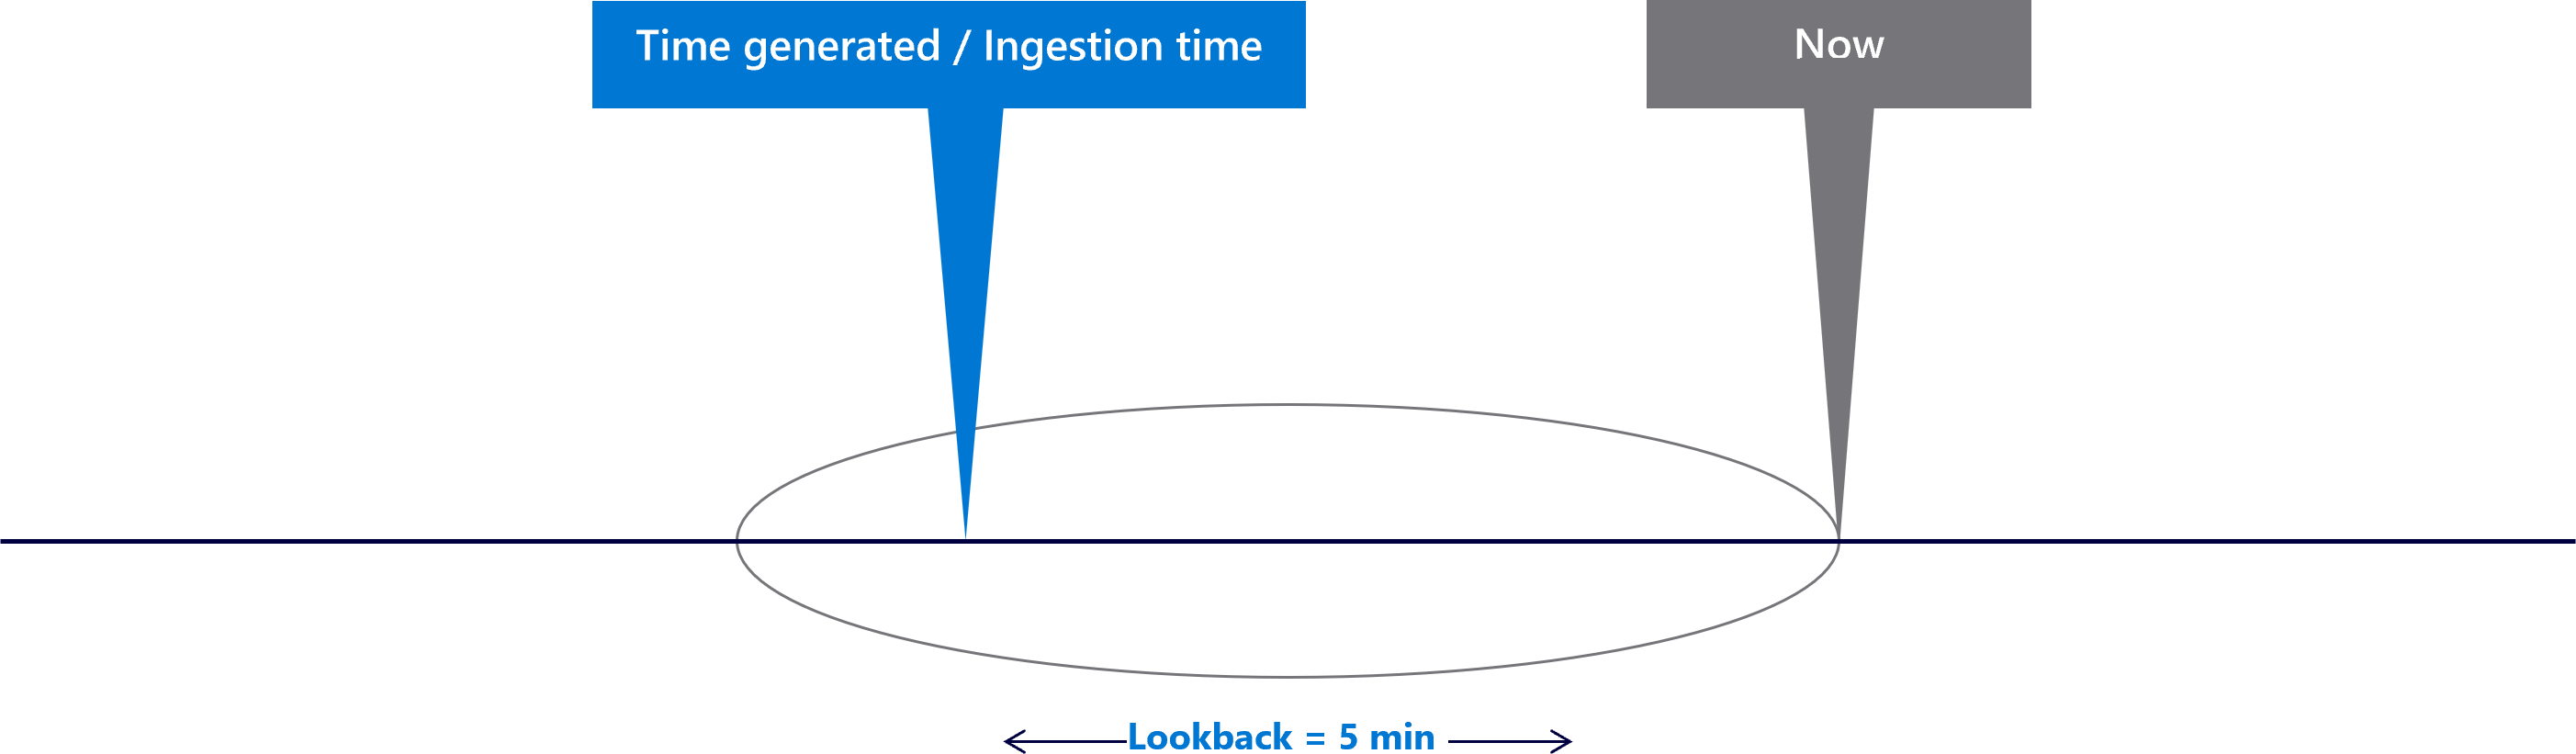 Diagramme montrant une fenêtre de rétrospection de cinq minutes.